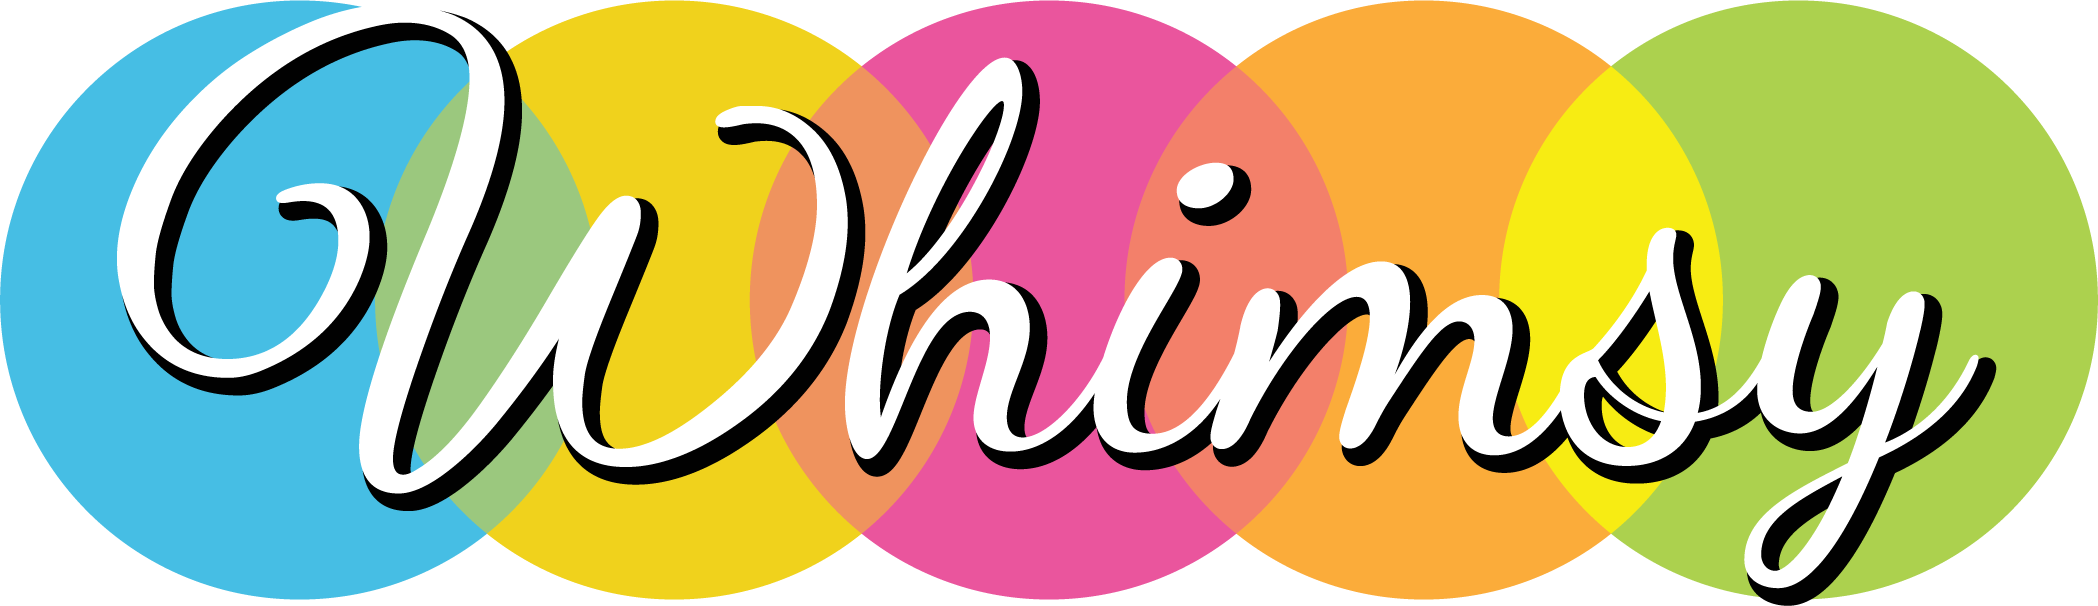 Whimsy Logo Image